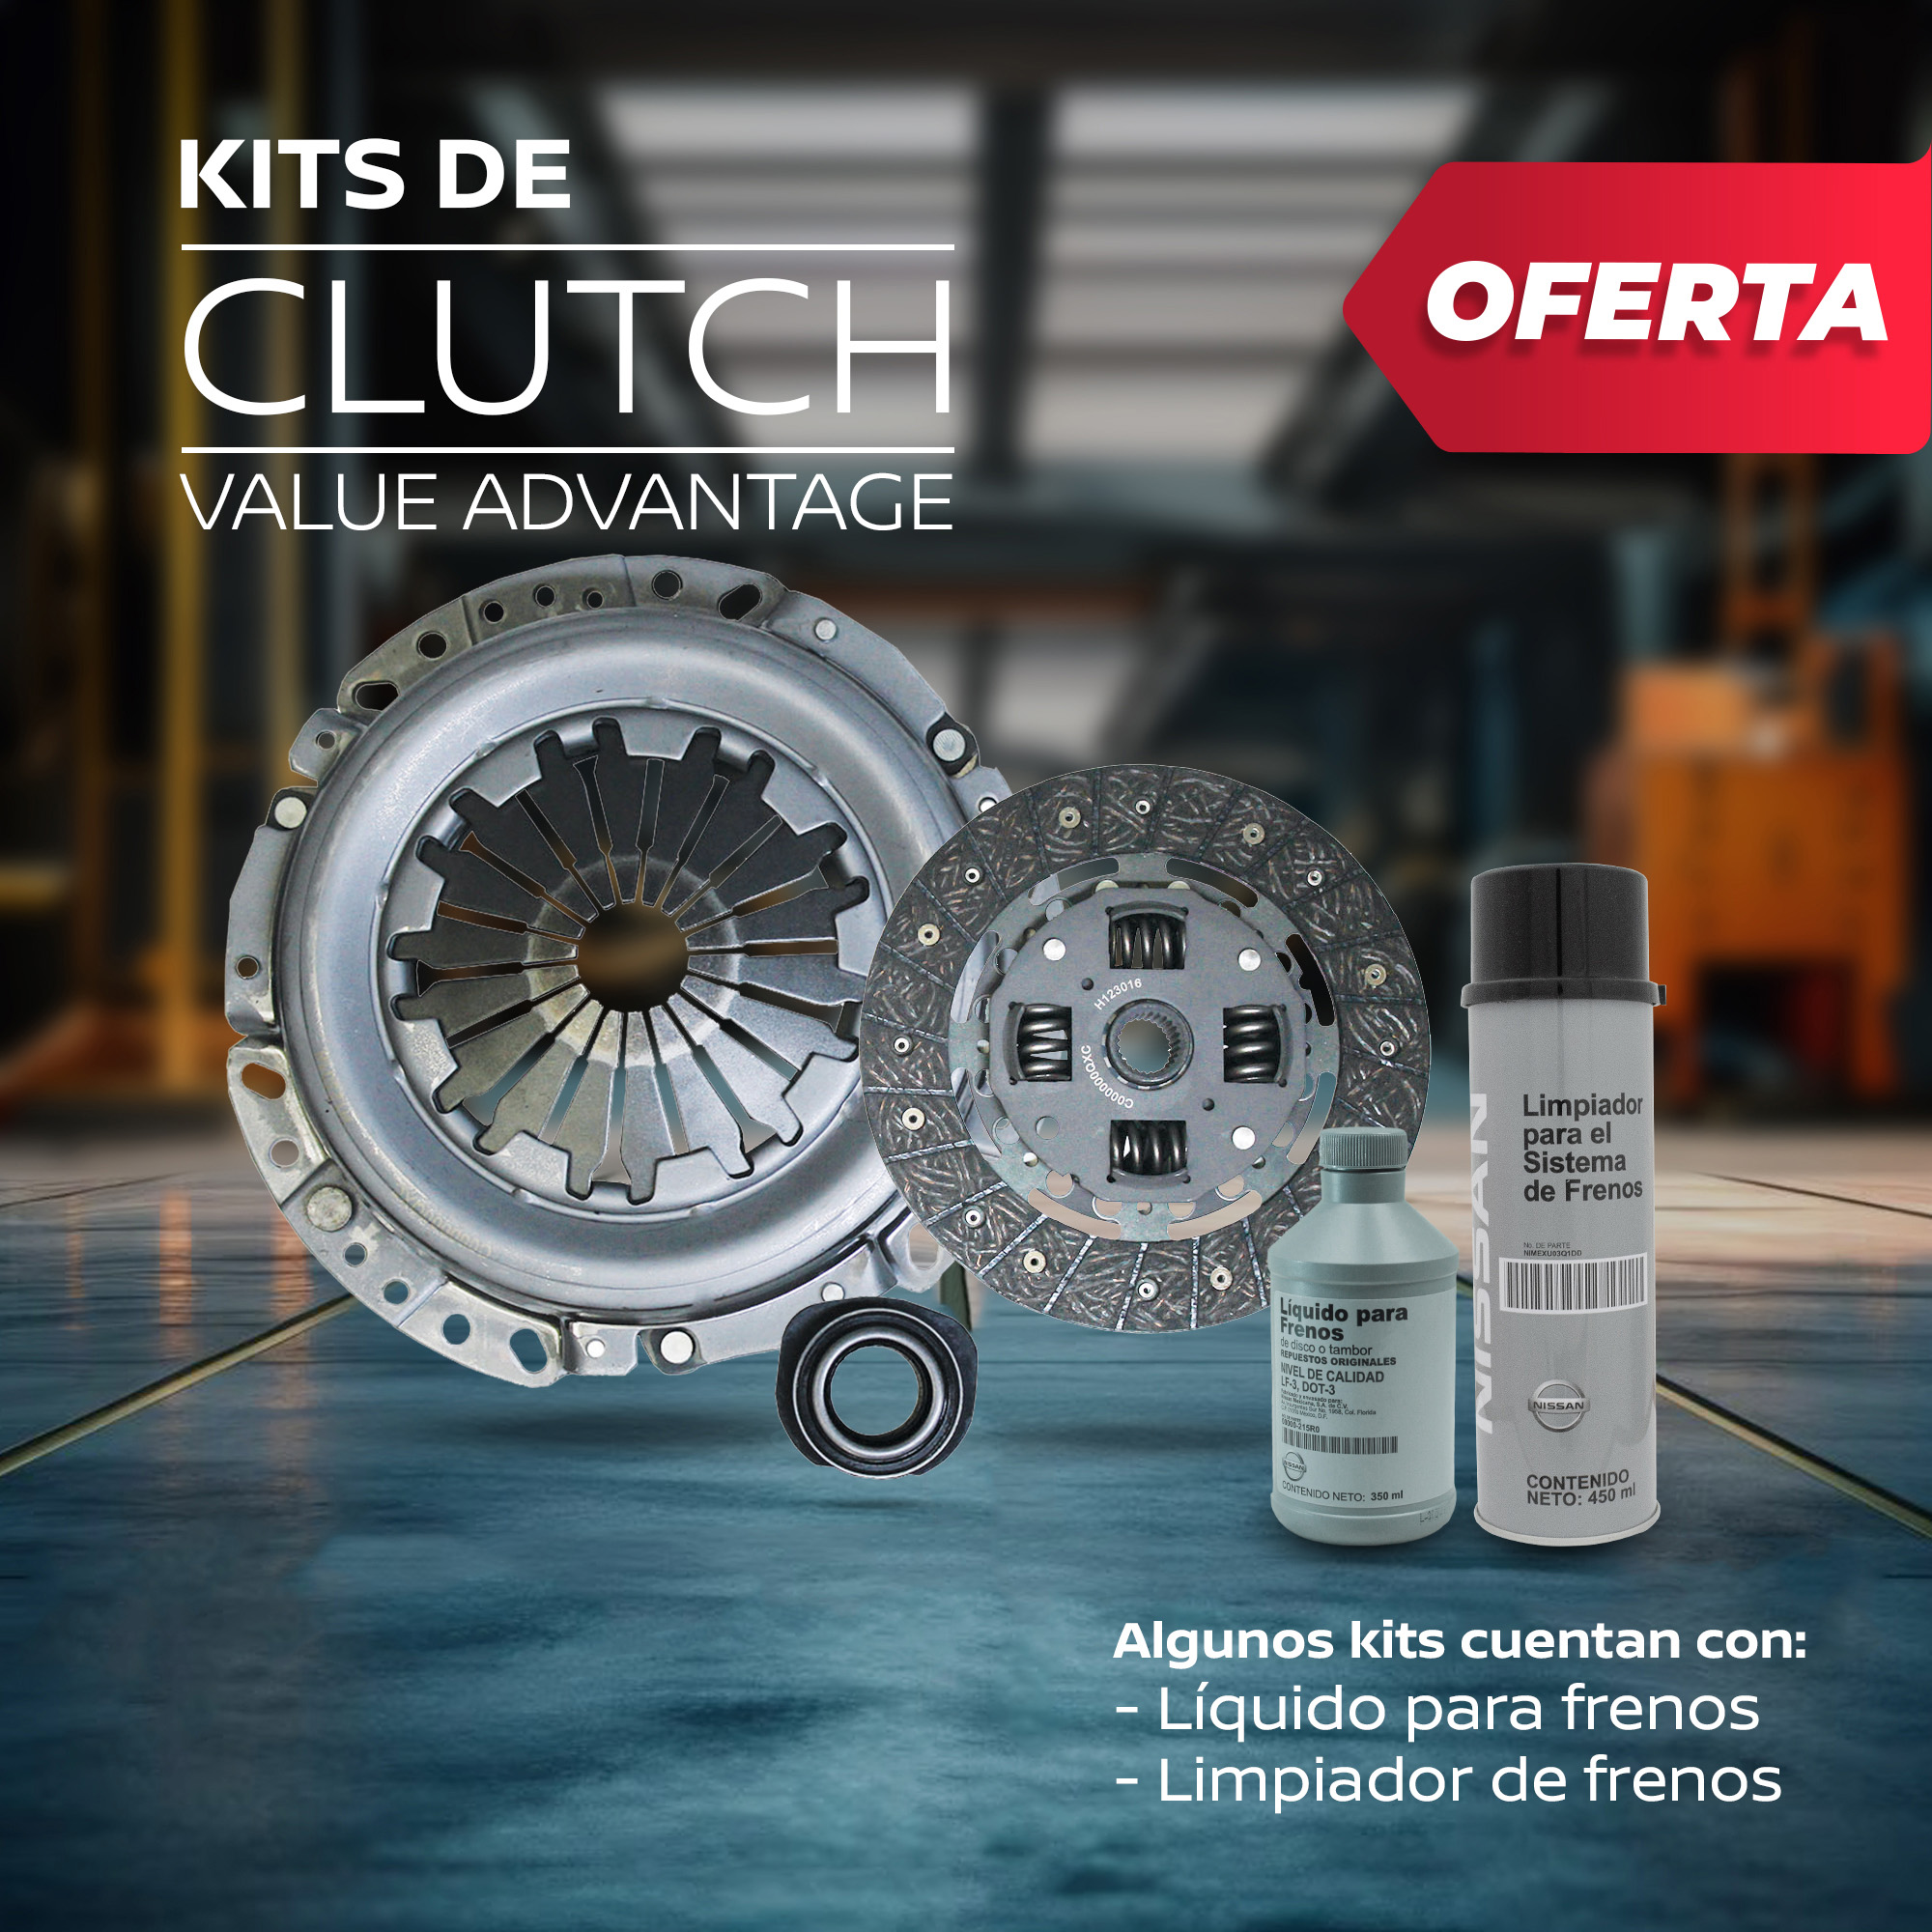 Refacciones Nissan com mx PromoPack Kit de Clutch2